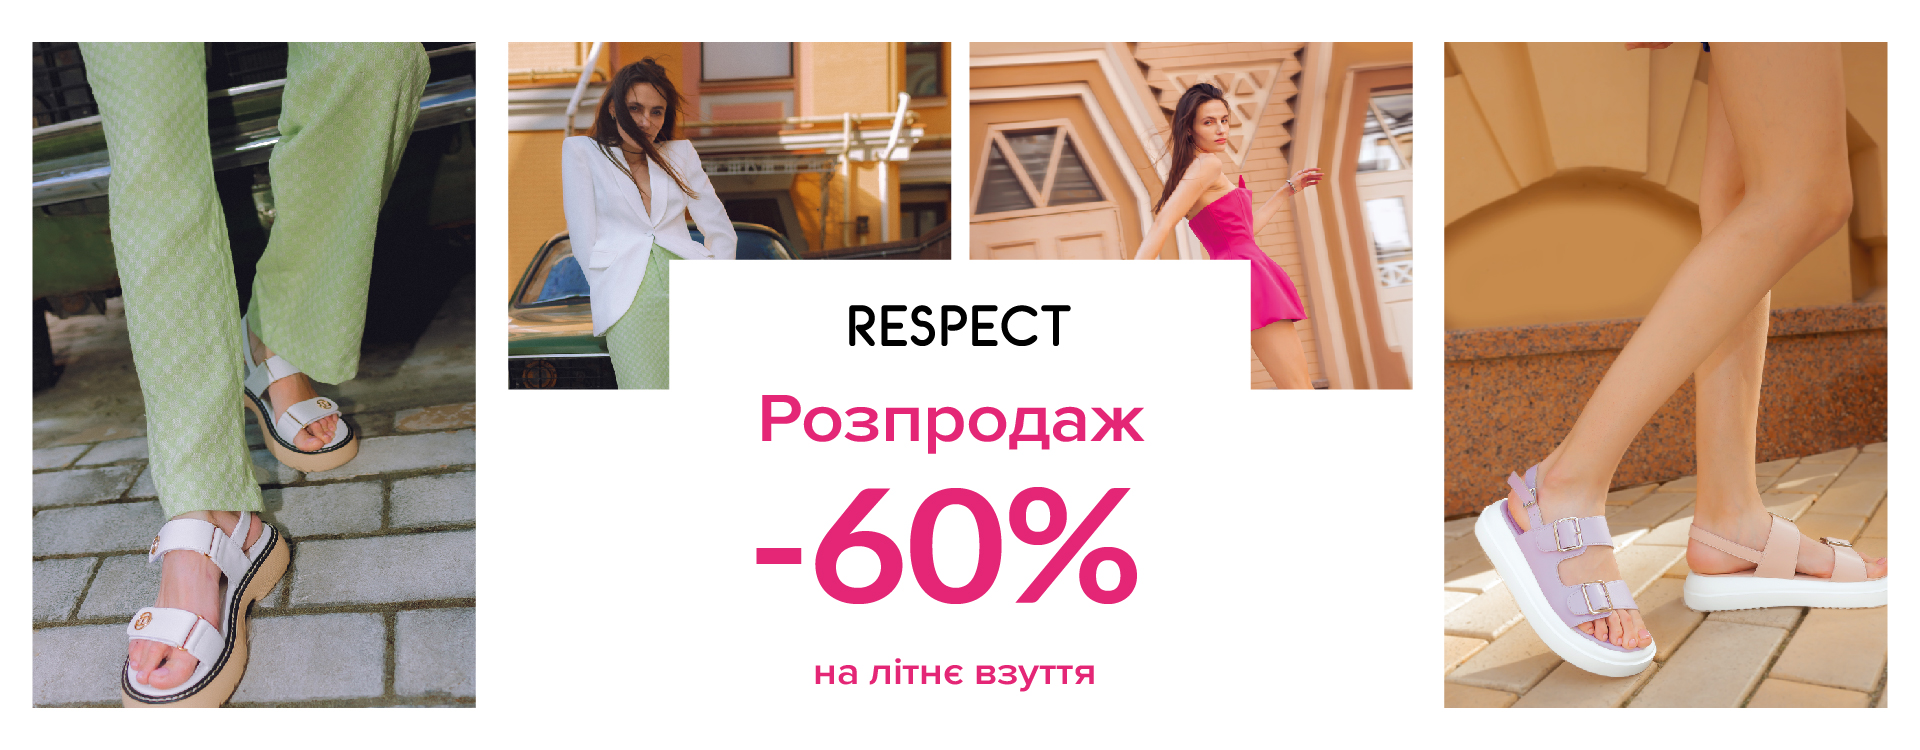 Розпродаж літнього взуття -60% у Respect